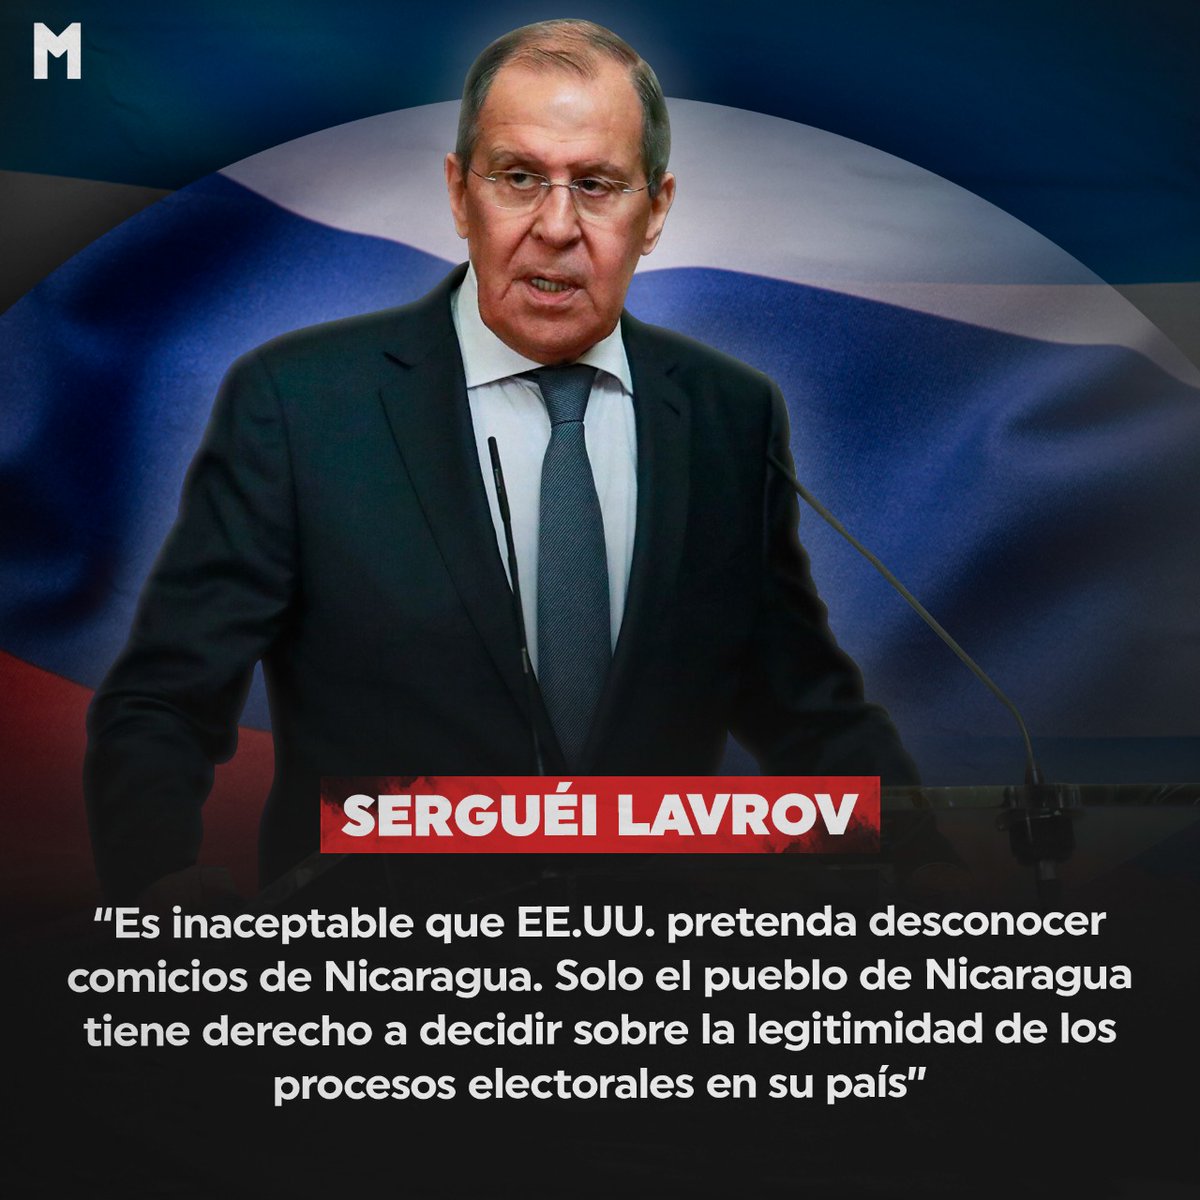 #NicaraguaTriunfa| El ministro de Asuntos Exteriores de #Rusia, Serguéi Lavrov, califica de inaceptable que #EE.UU. pretenda desconocer comicios de #Nicaragua, así mismo alego que sólo los nicaragüenses deciden. ✊🇳🇮🇷🇺

#TodosJuntosVamosAdelante
#9Noviembre